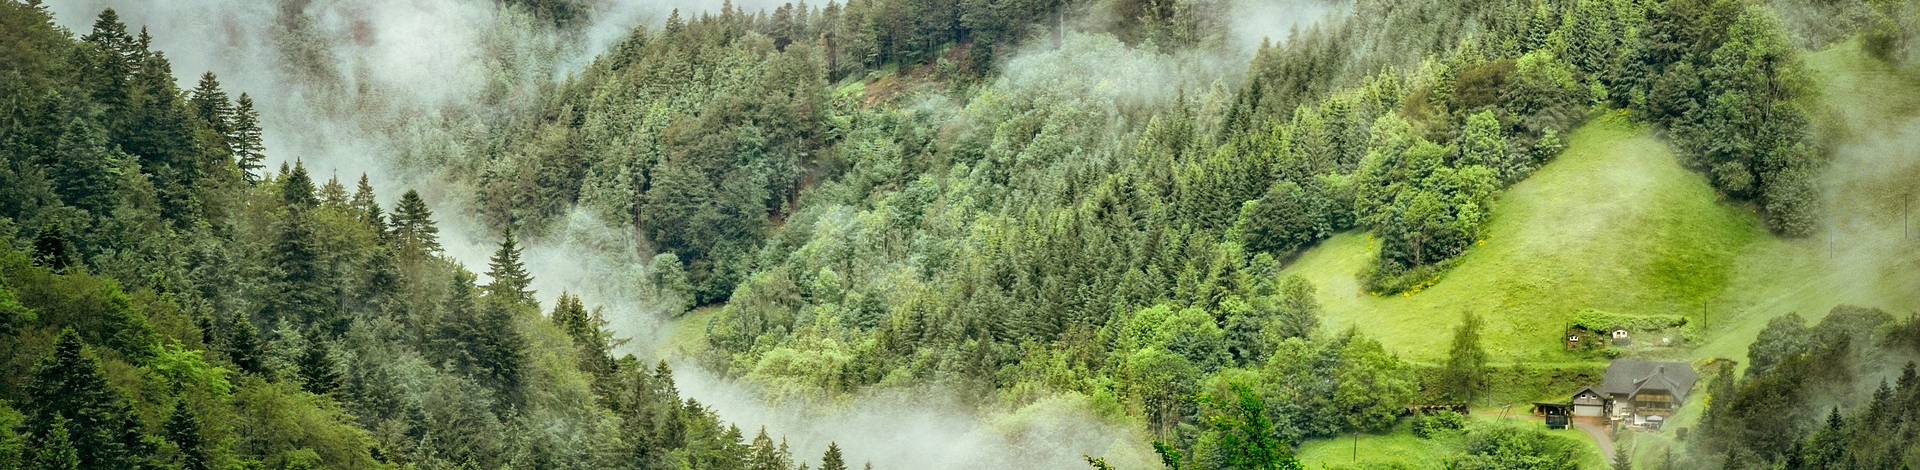 Nebel steigt aus den Schwarzwälder Bäumen empor